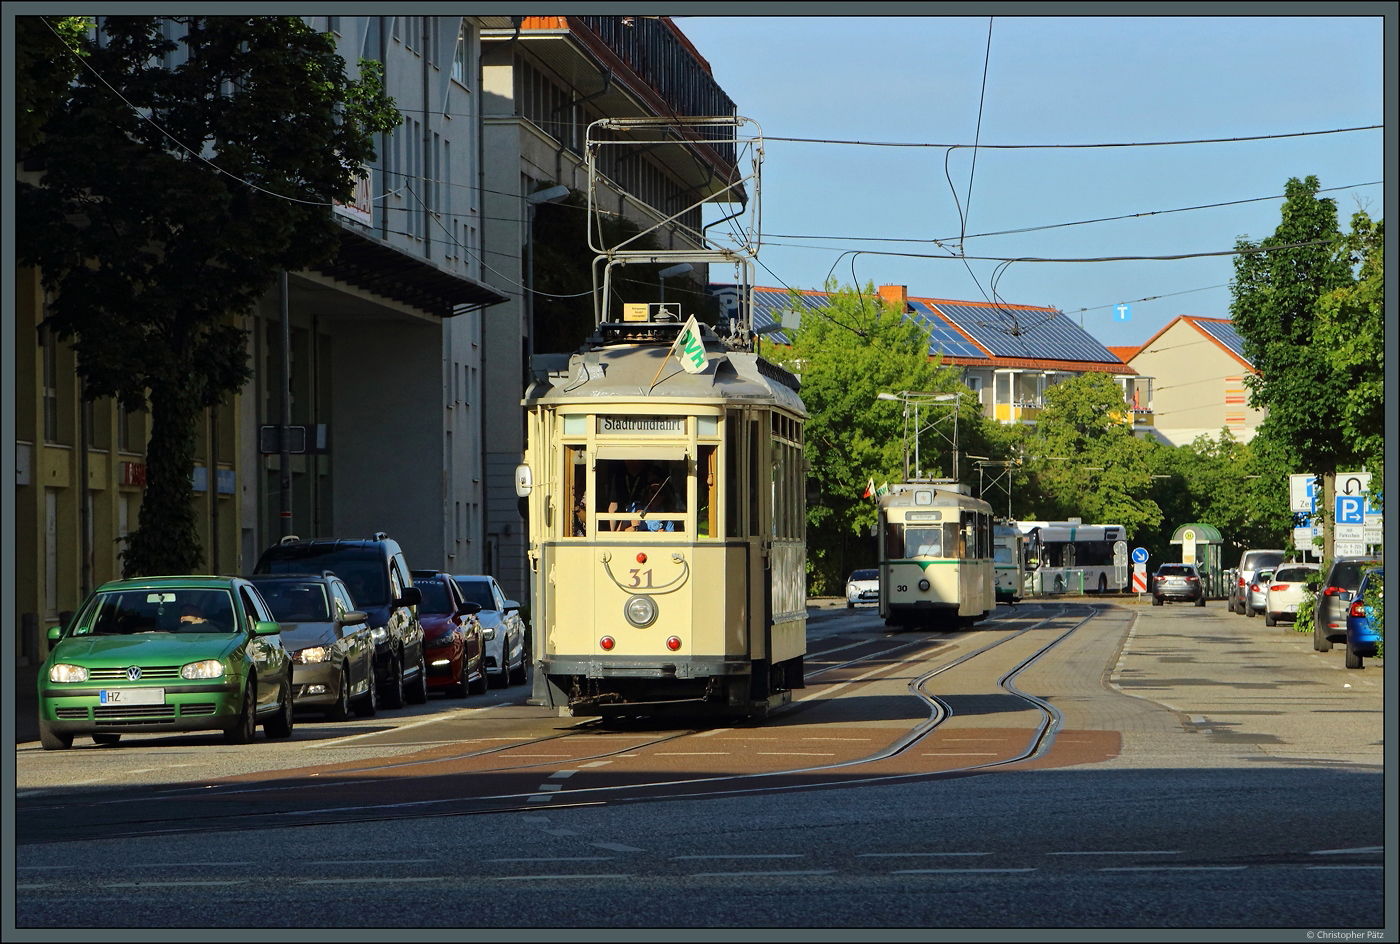 Zum 120-jährigen Straßenbahnjubiläum in Halberstadt rollen die historischen Triebwagen bei einer Fahrzeugparade durch die Stadt. Am Holzmarkt wird Lindner-Tw 31 von der Abendsonne beschienen, dahinter folgen der Gothawagen 30 und der ET54 Nr. 36. (Halberstadt, 03.06.2023)